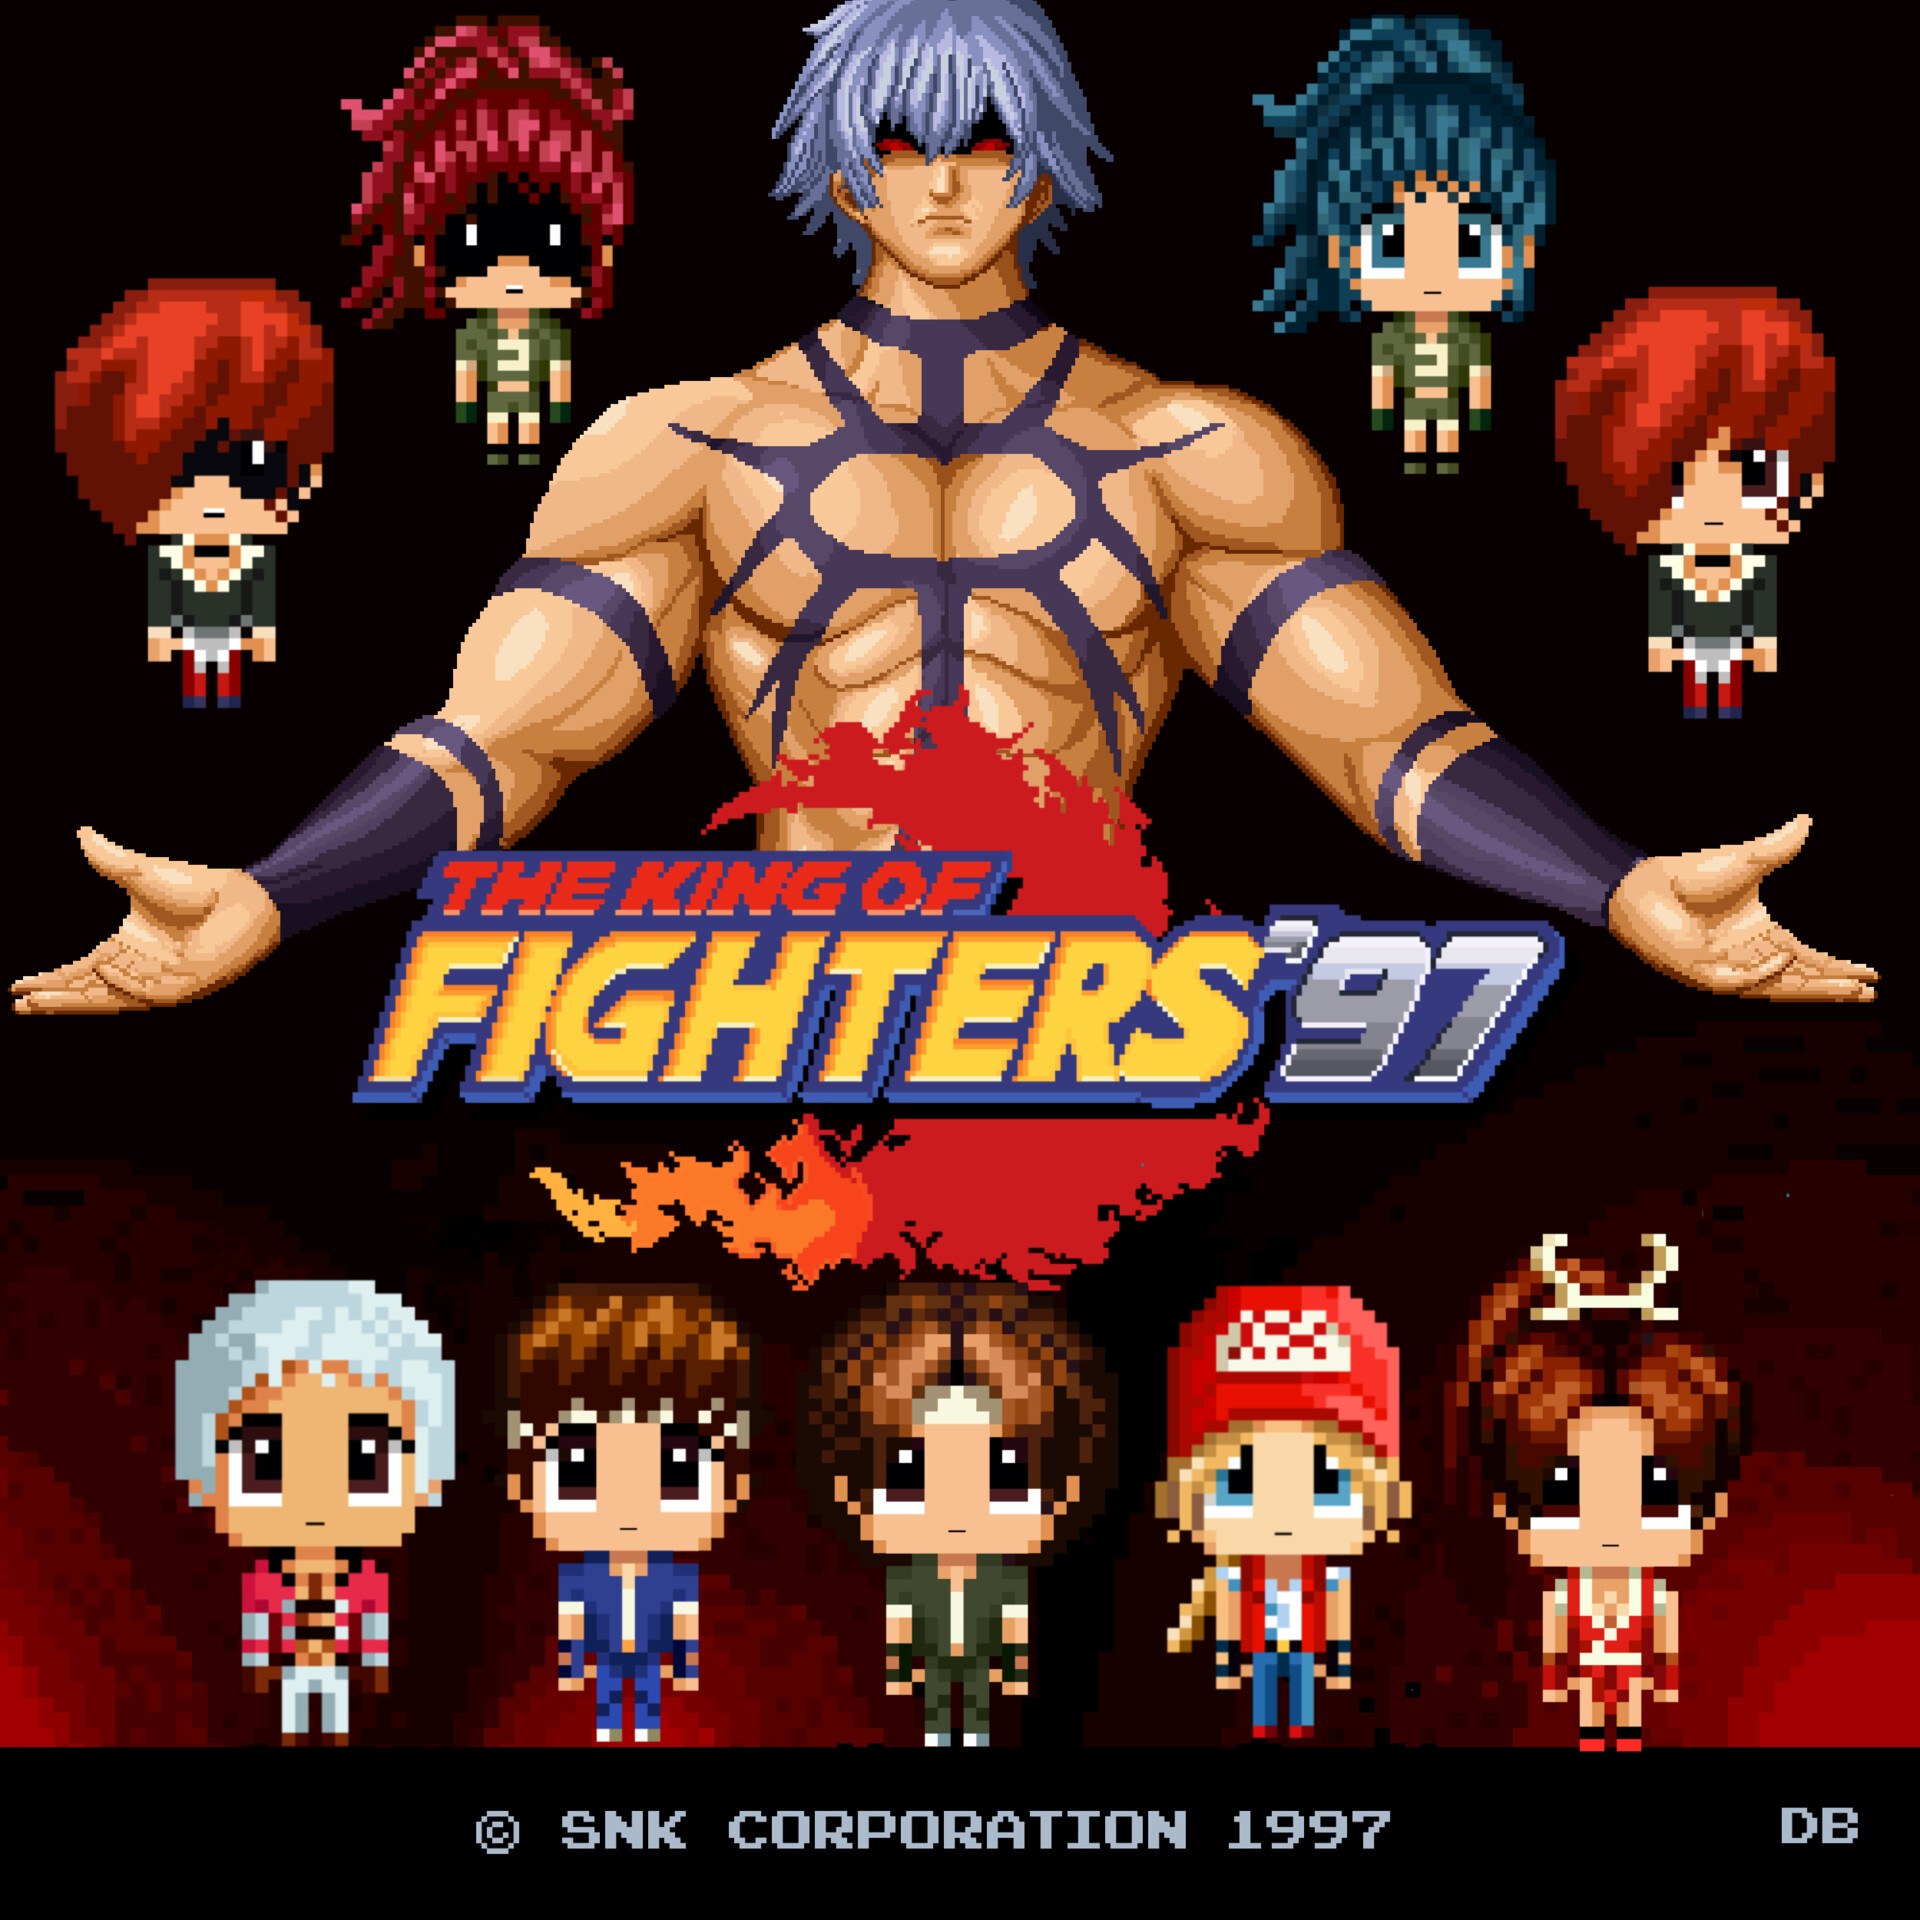 ArtStation - The King of Fighters 97 Fan Art